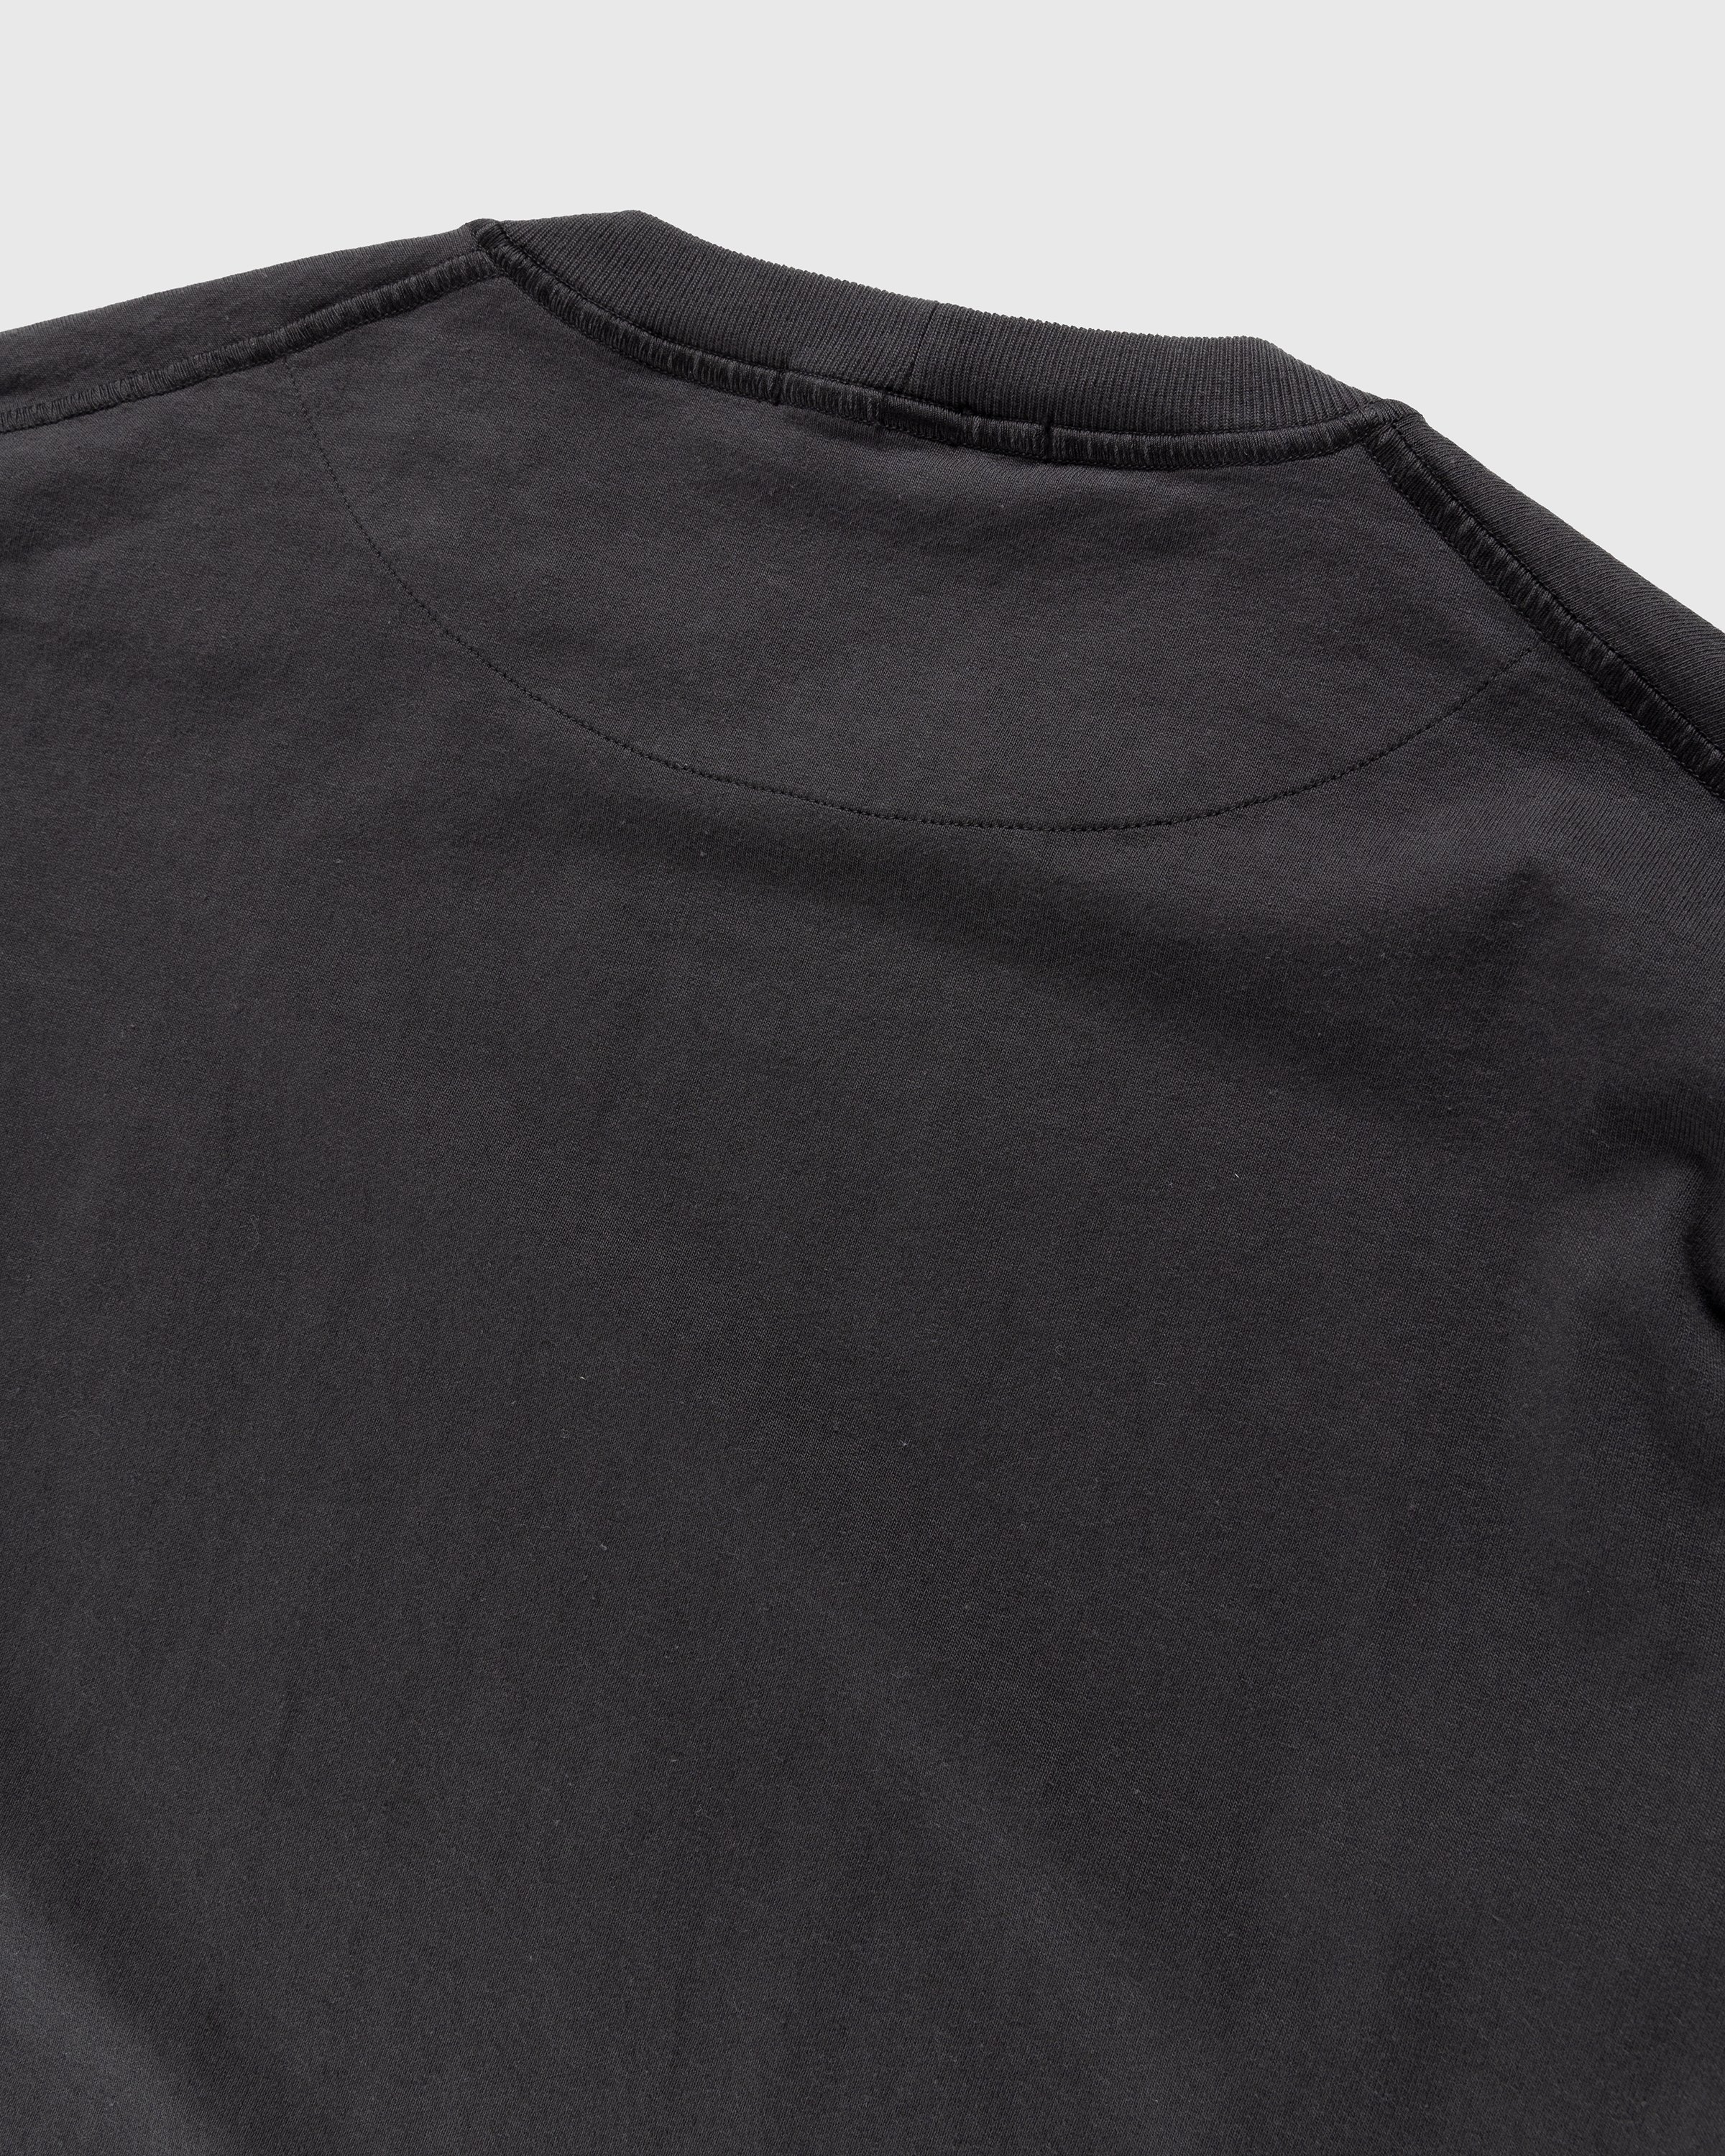 Stone Island - Fissato Longsleeve T-Shirt Charcoal - Clothing - Grey - Image 4